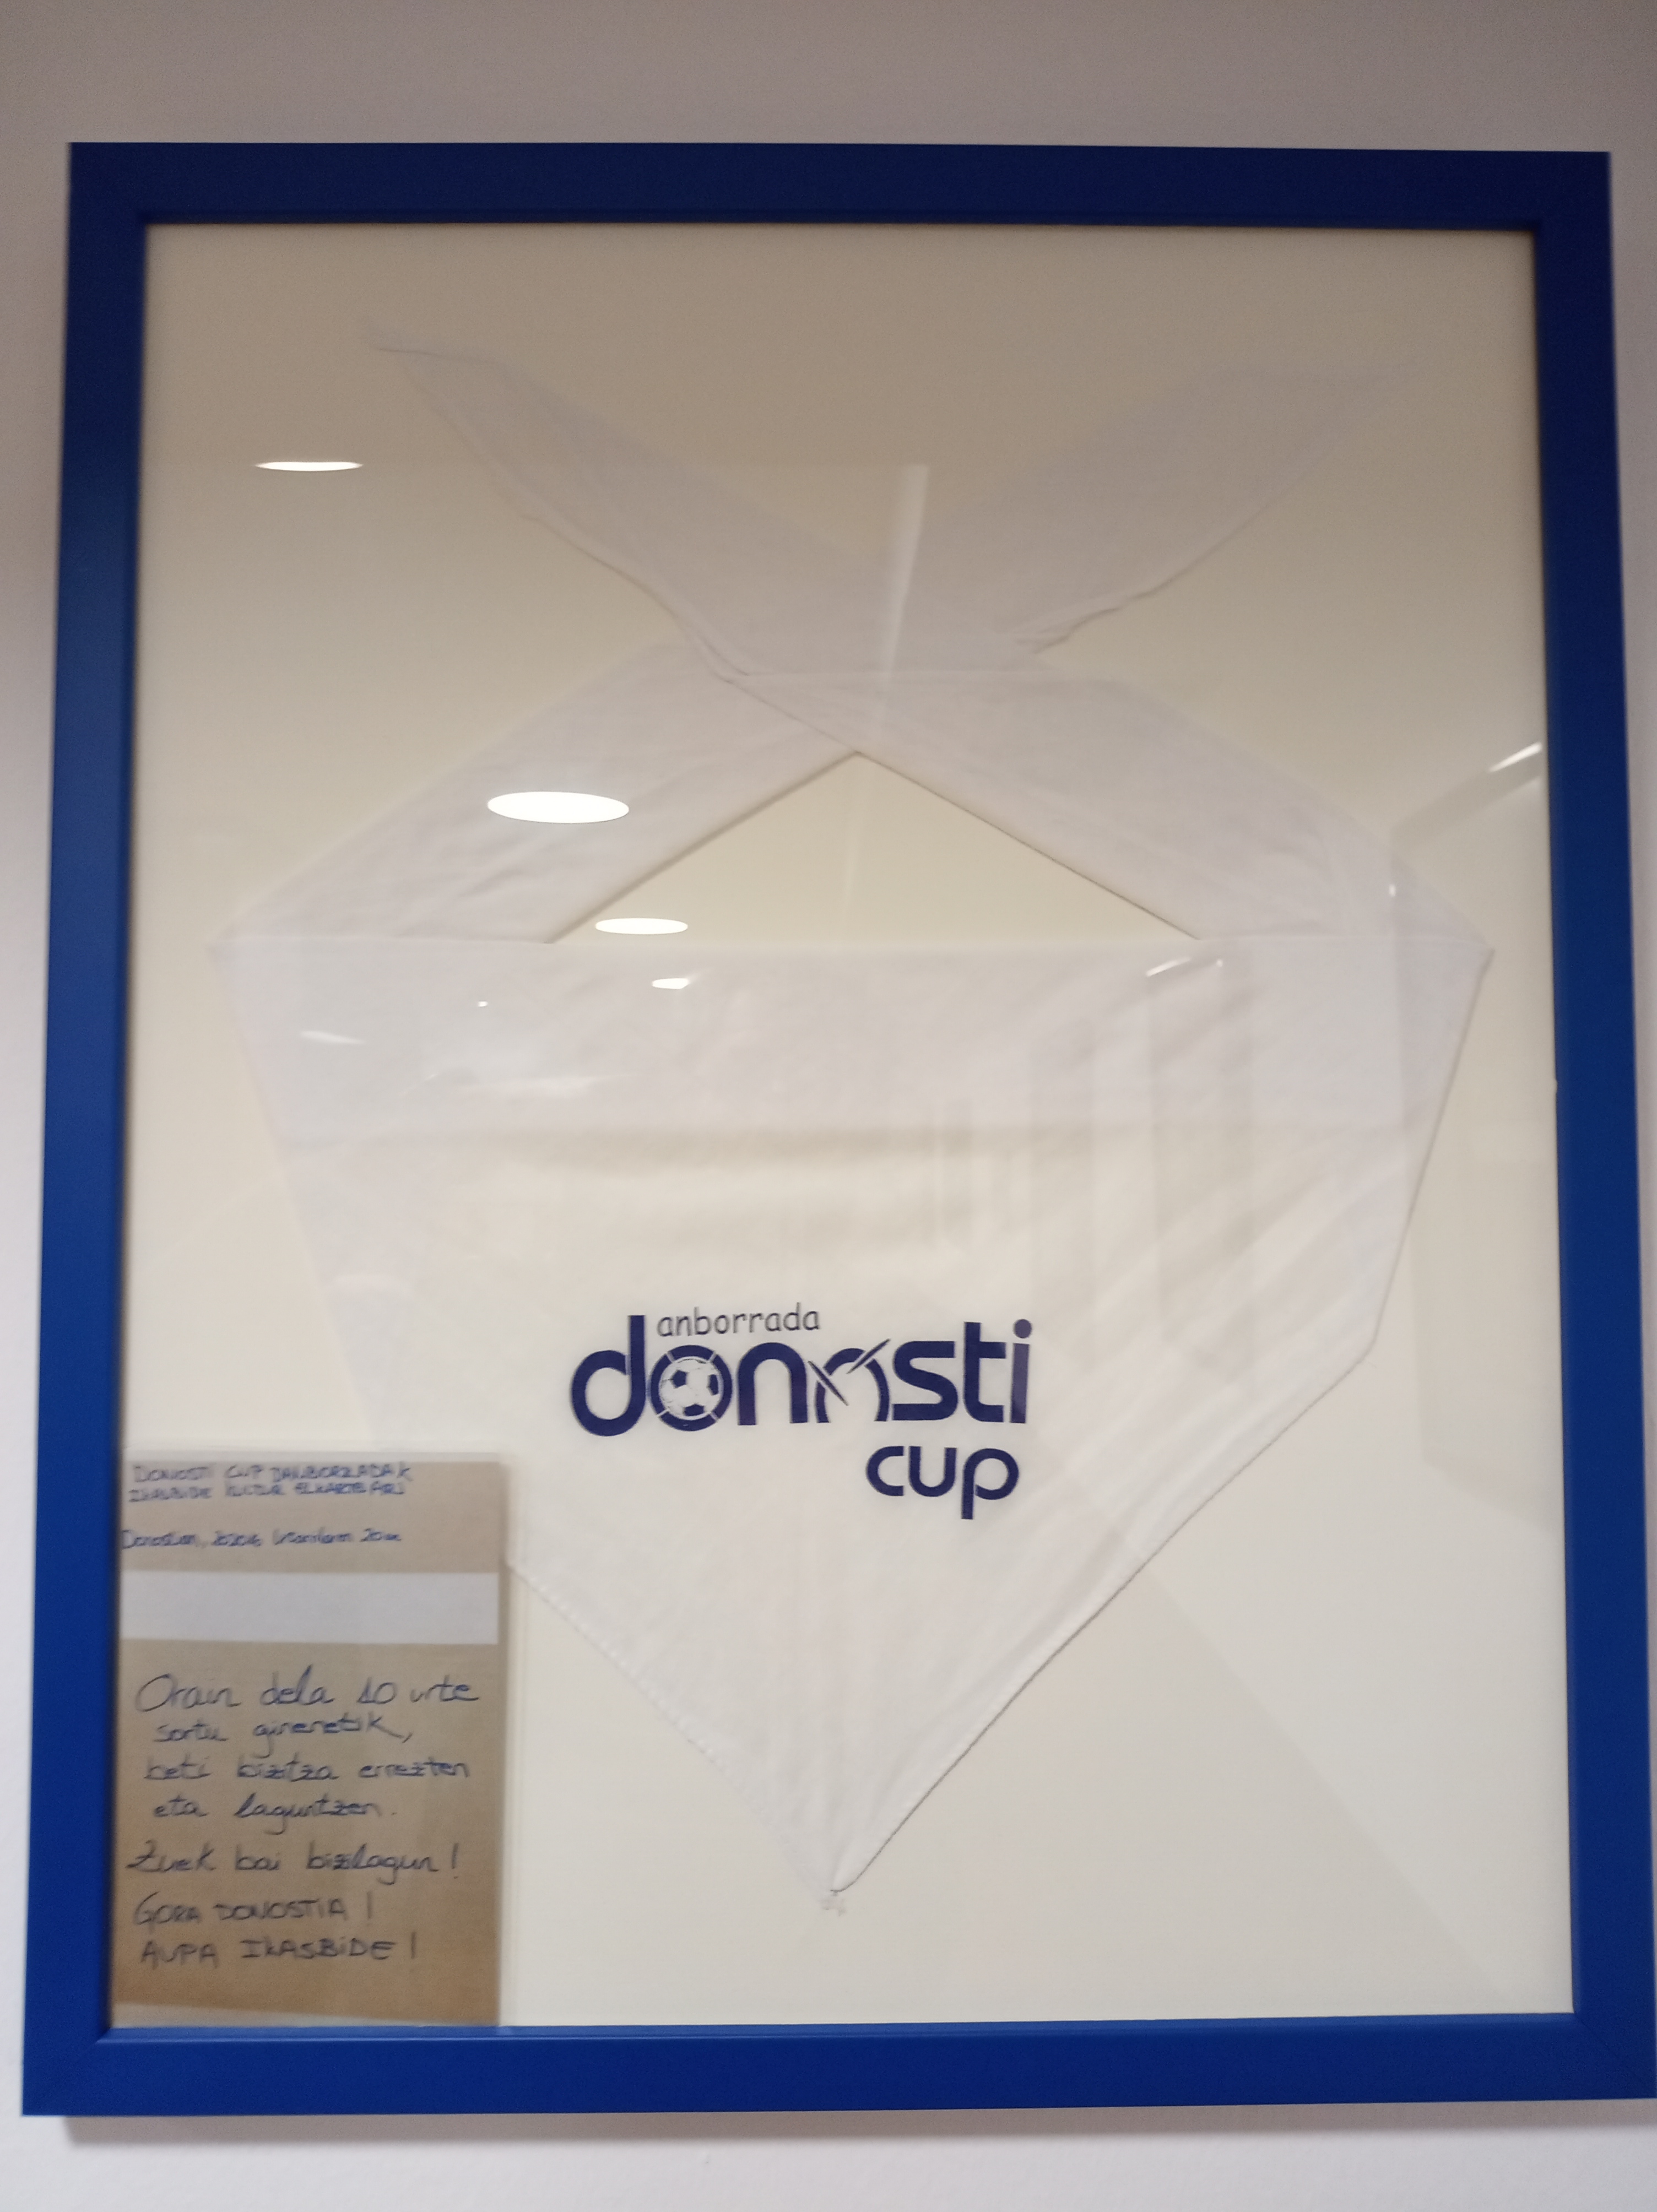 2020 Donosti Cup